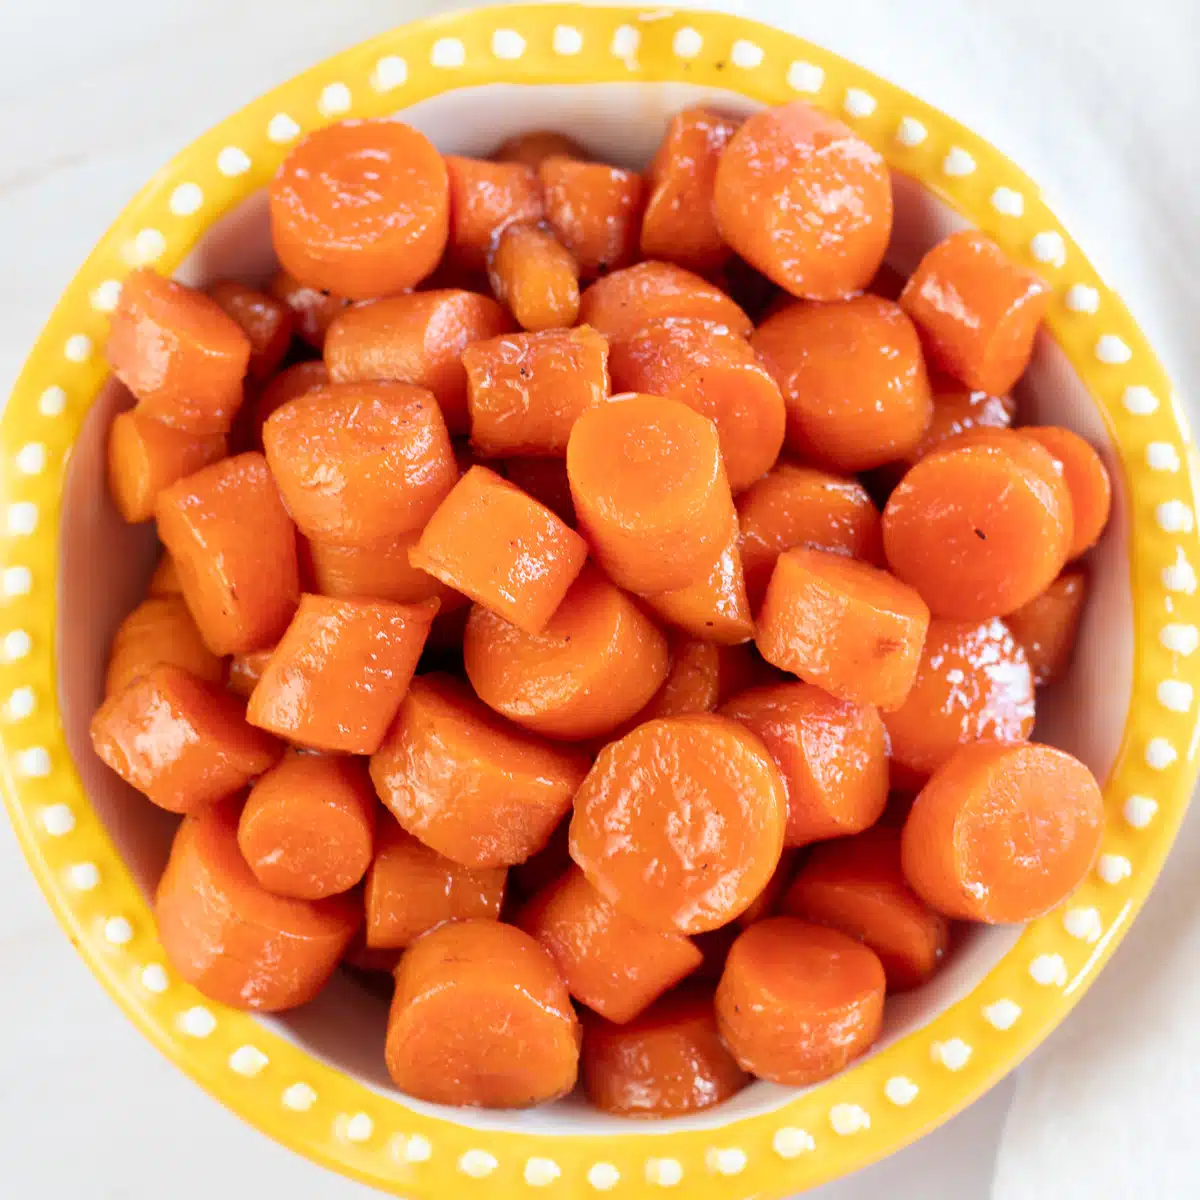 Quadratisches Bild einer Schüssel mit kandierten Karotten.